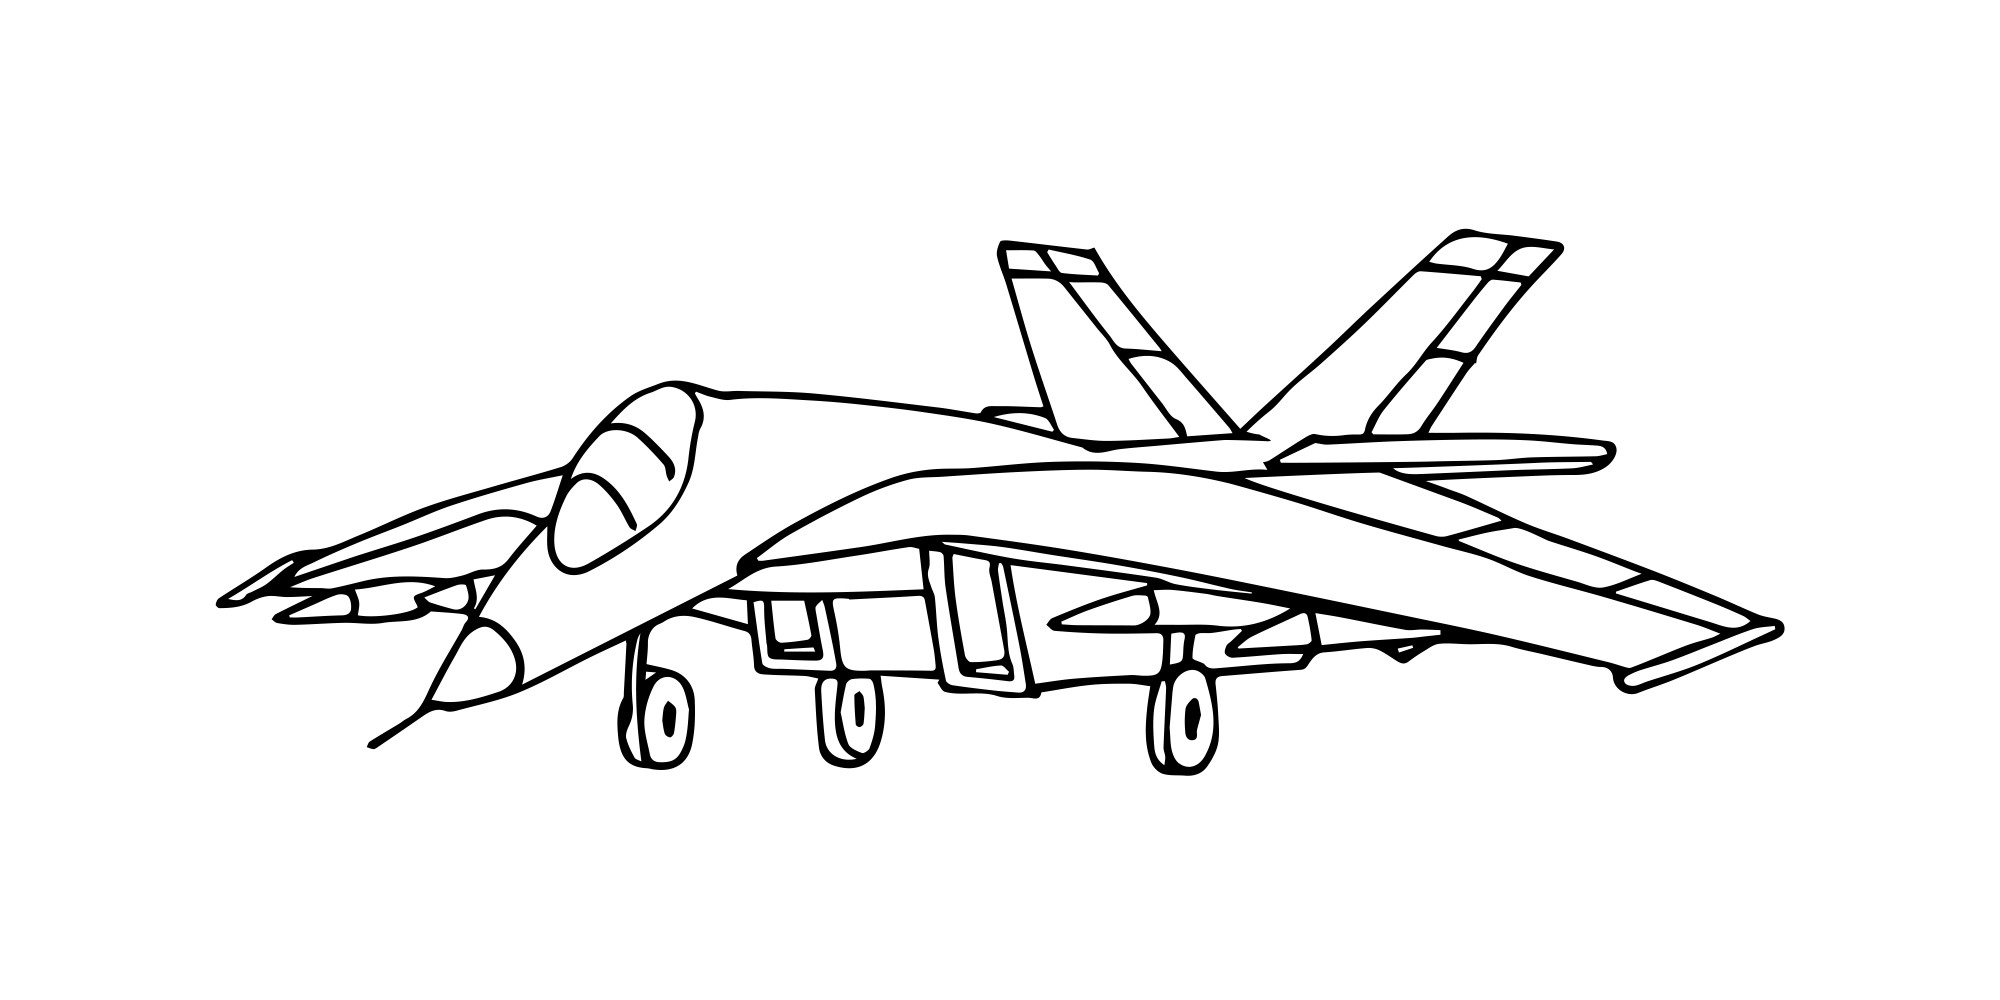 Раскраска для детей: истребитель «Летающий боец»